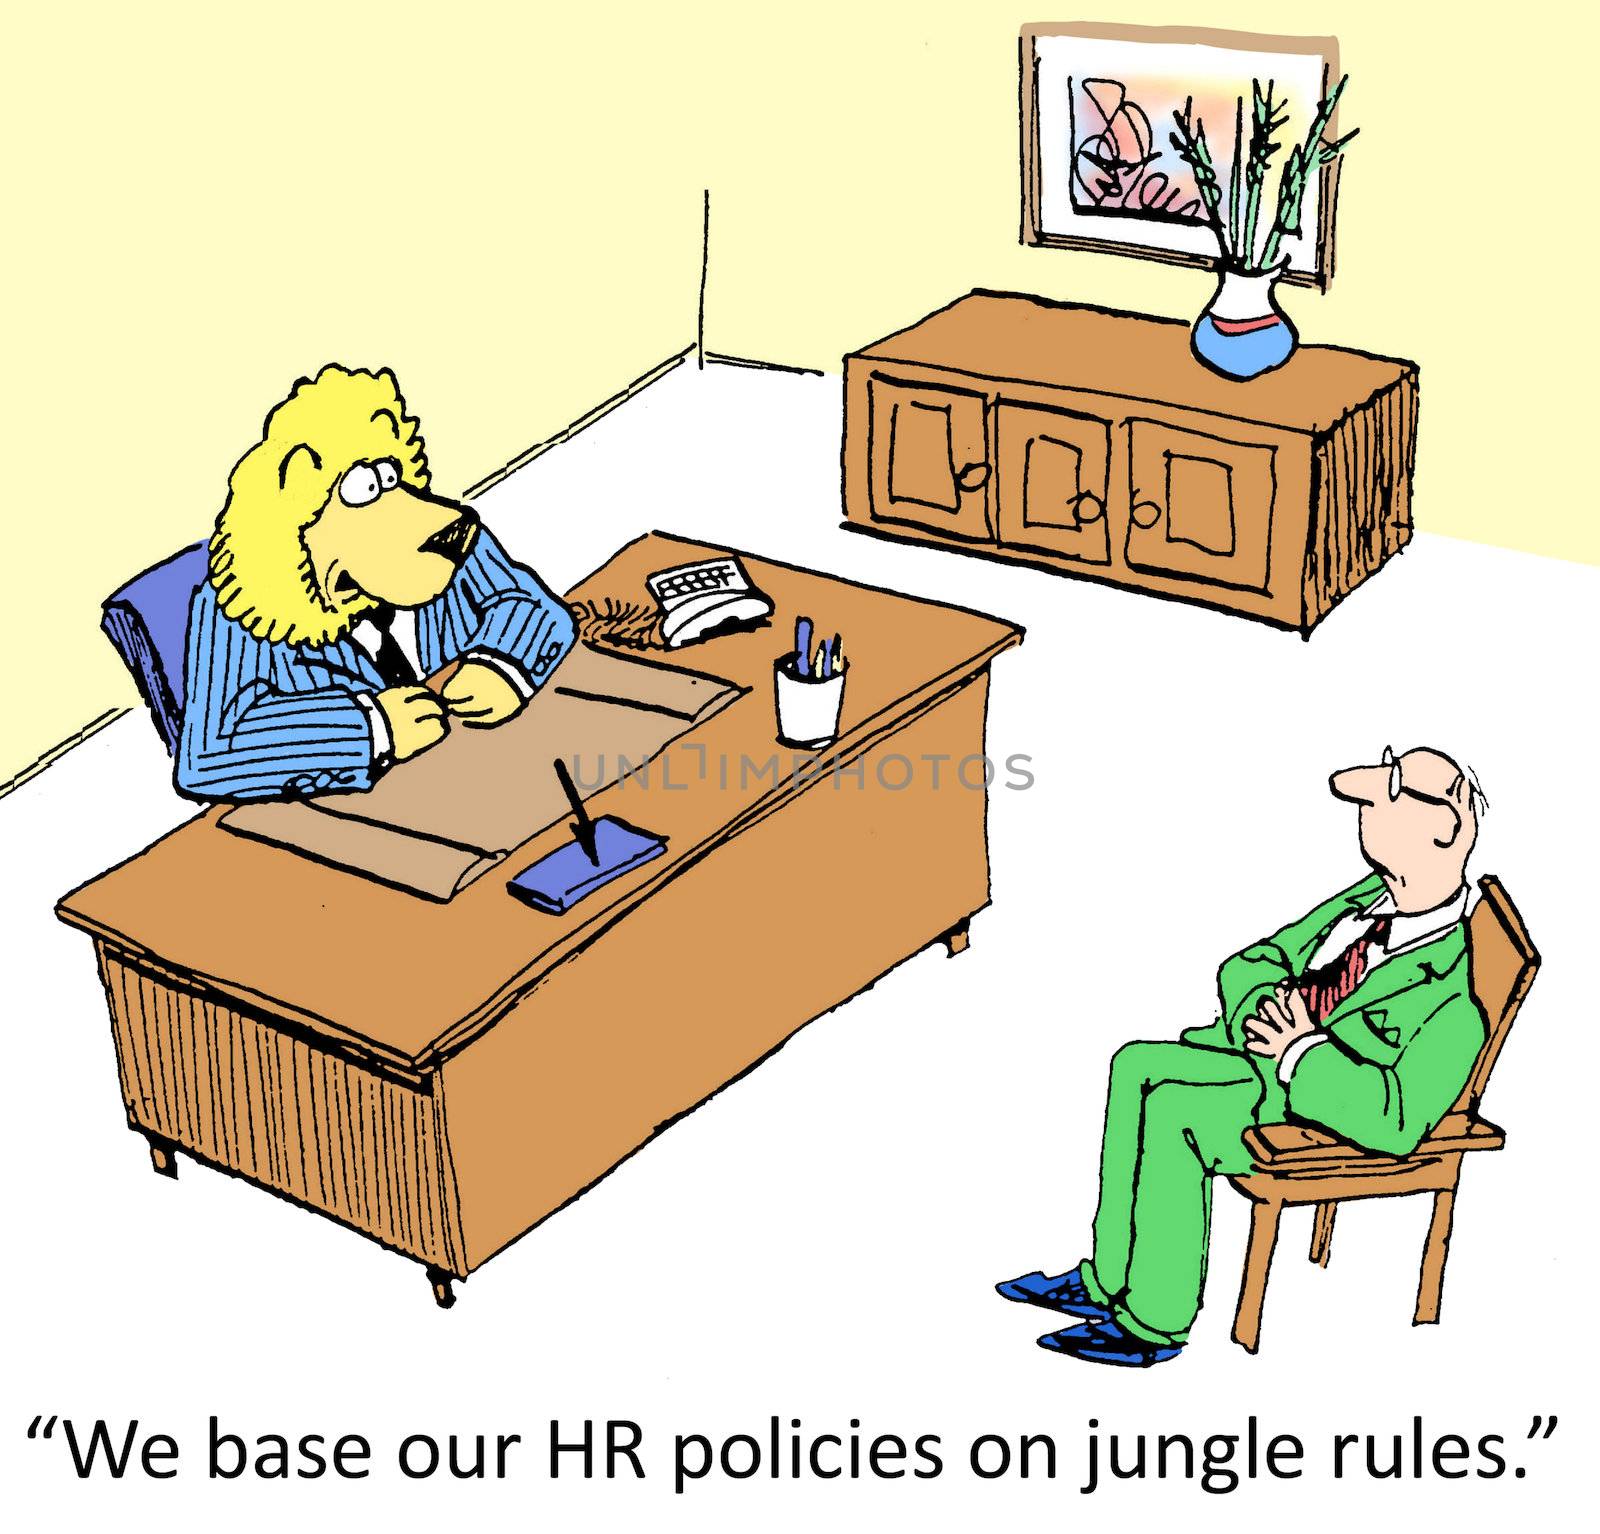 HR Policy by andrewgenn